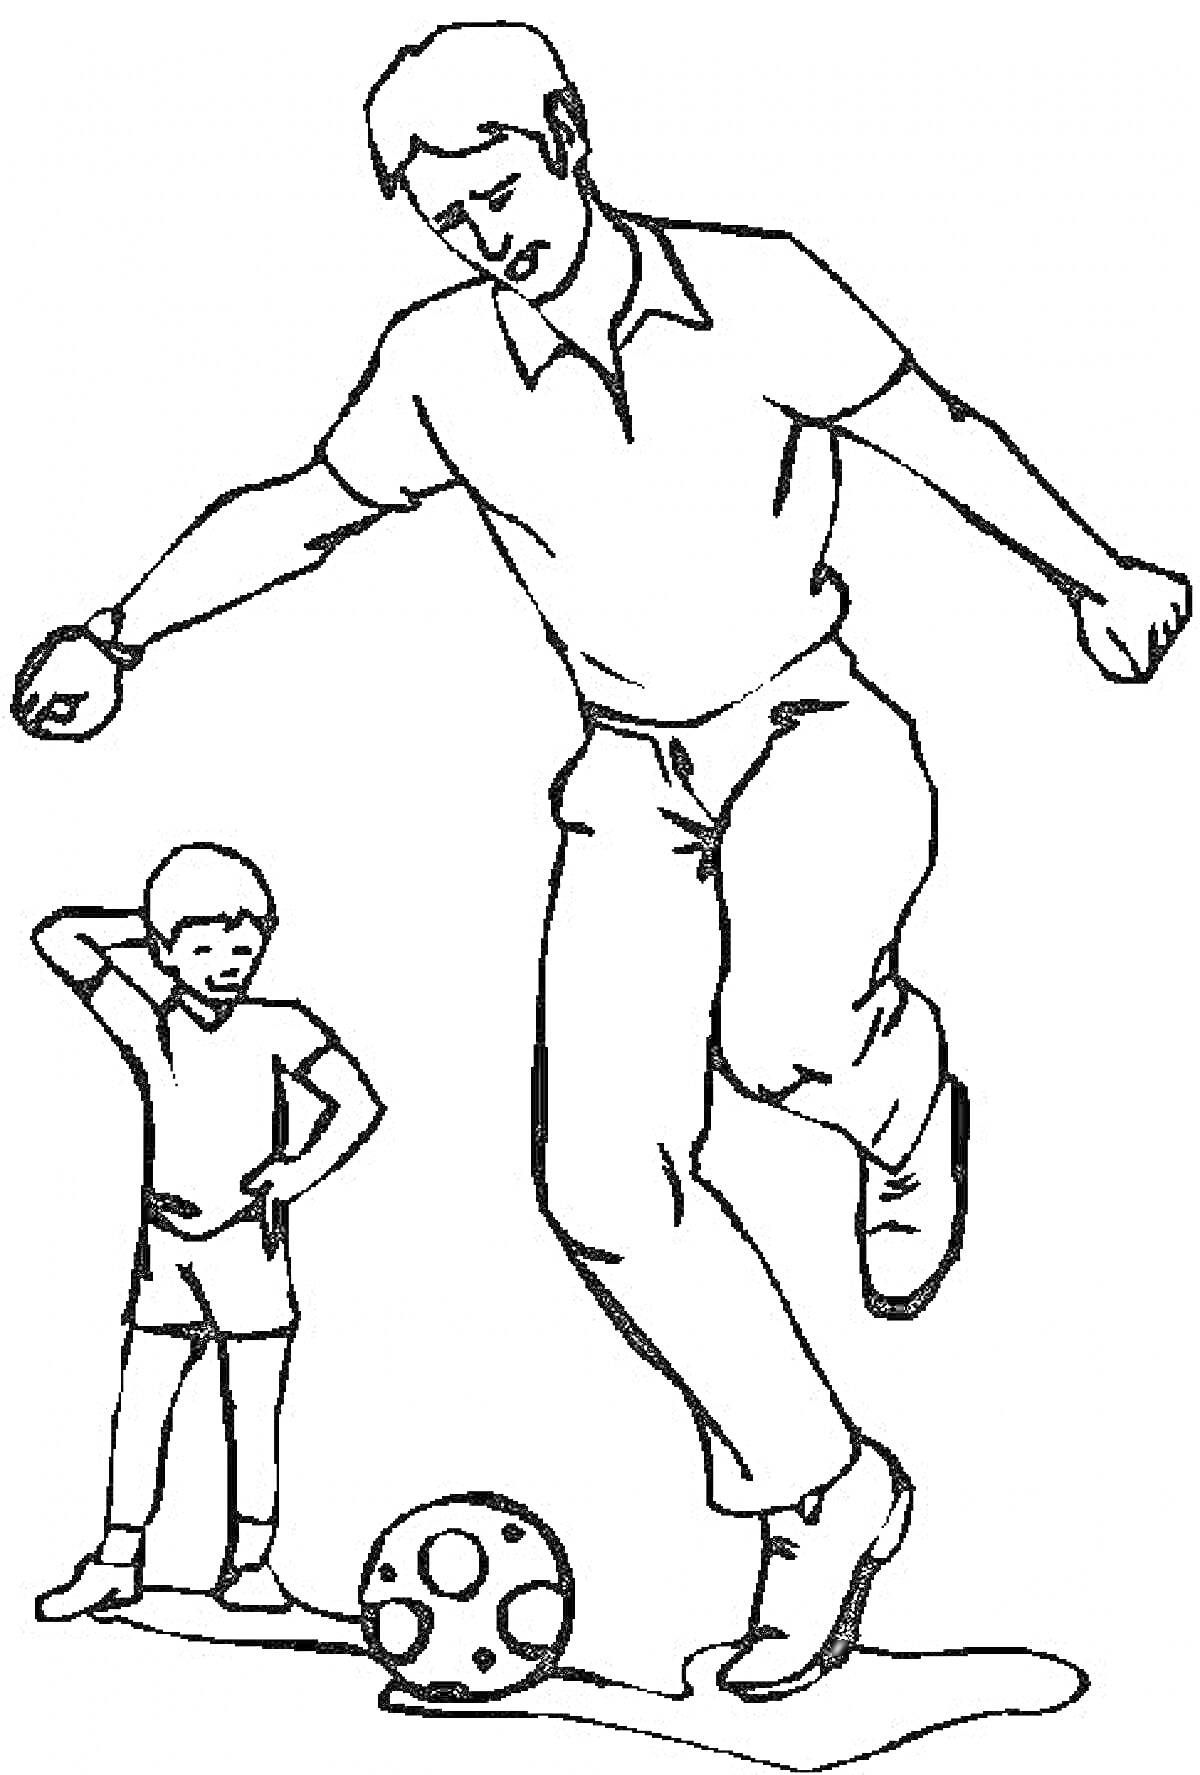 Раскраска Папа и сын играют в футбол, младший стоит, старший бьет по мячу